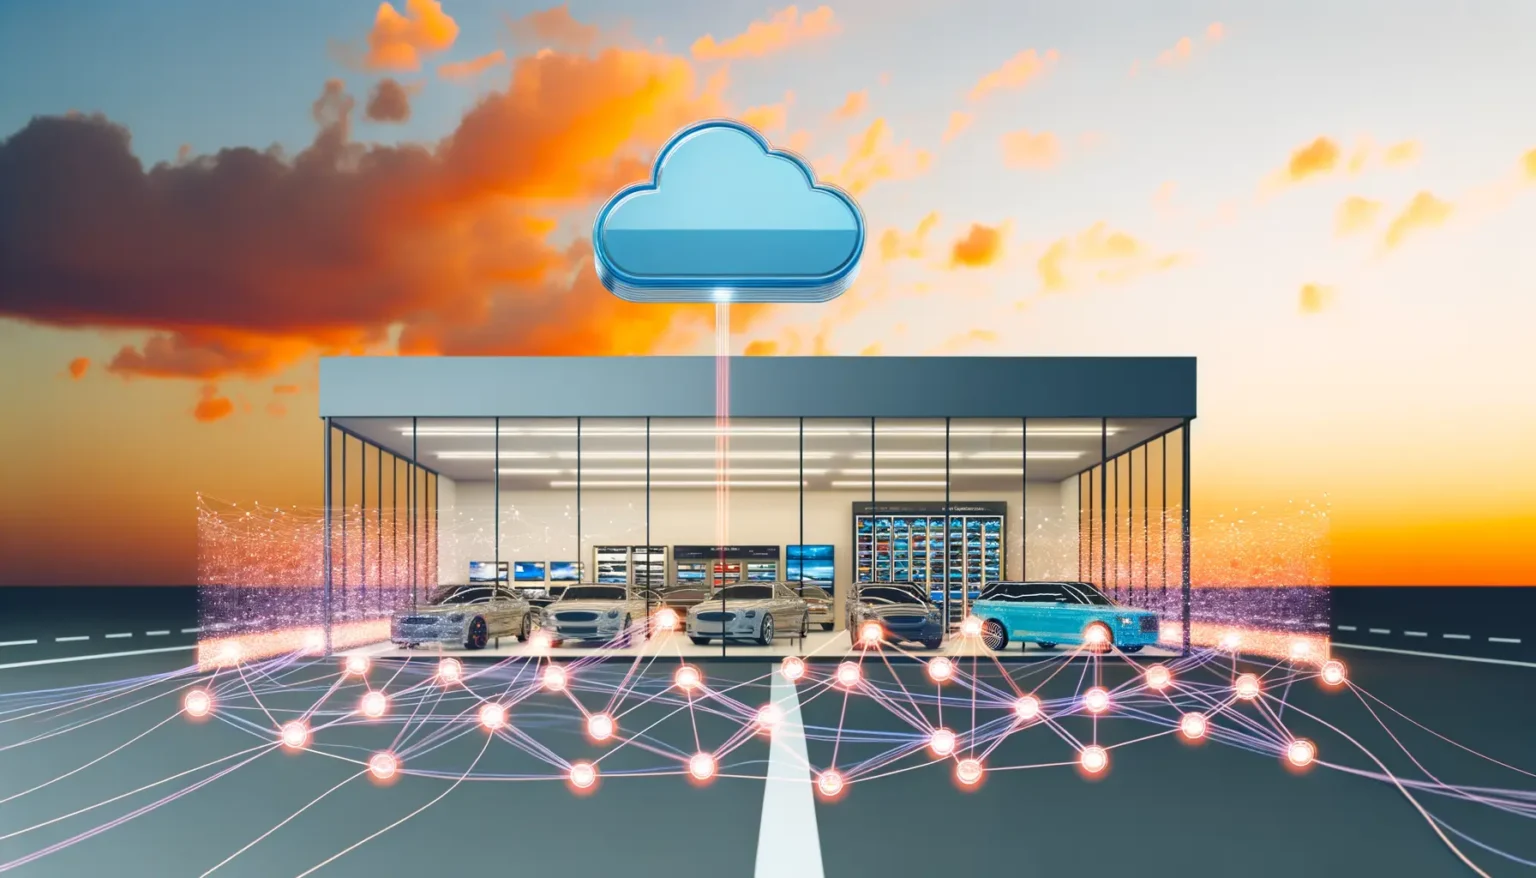 Digitale Konzeptdarstellung eines modernen Autohauses mit vernetzten Fahrzeugen, die Daten mit einem Cloud-Symbol oberhalb über einen Lichtstrahl austauschen, vor einem Sonnenuntergangshimmel.